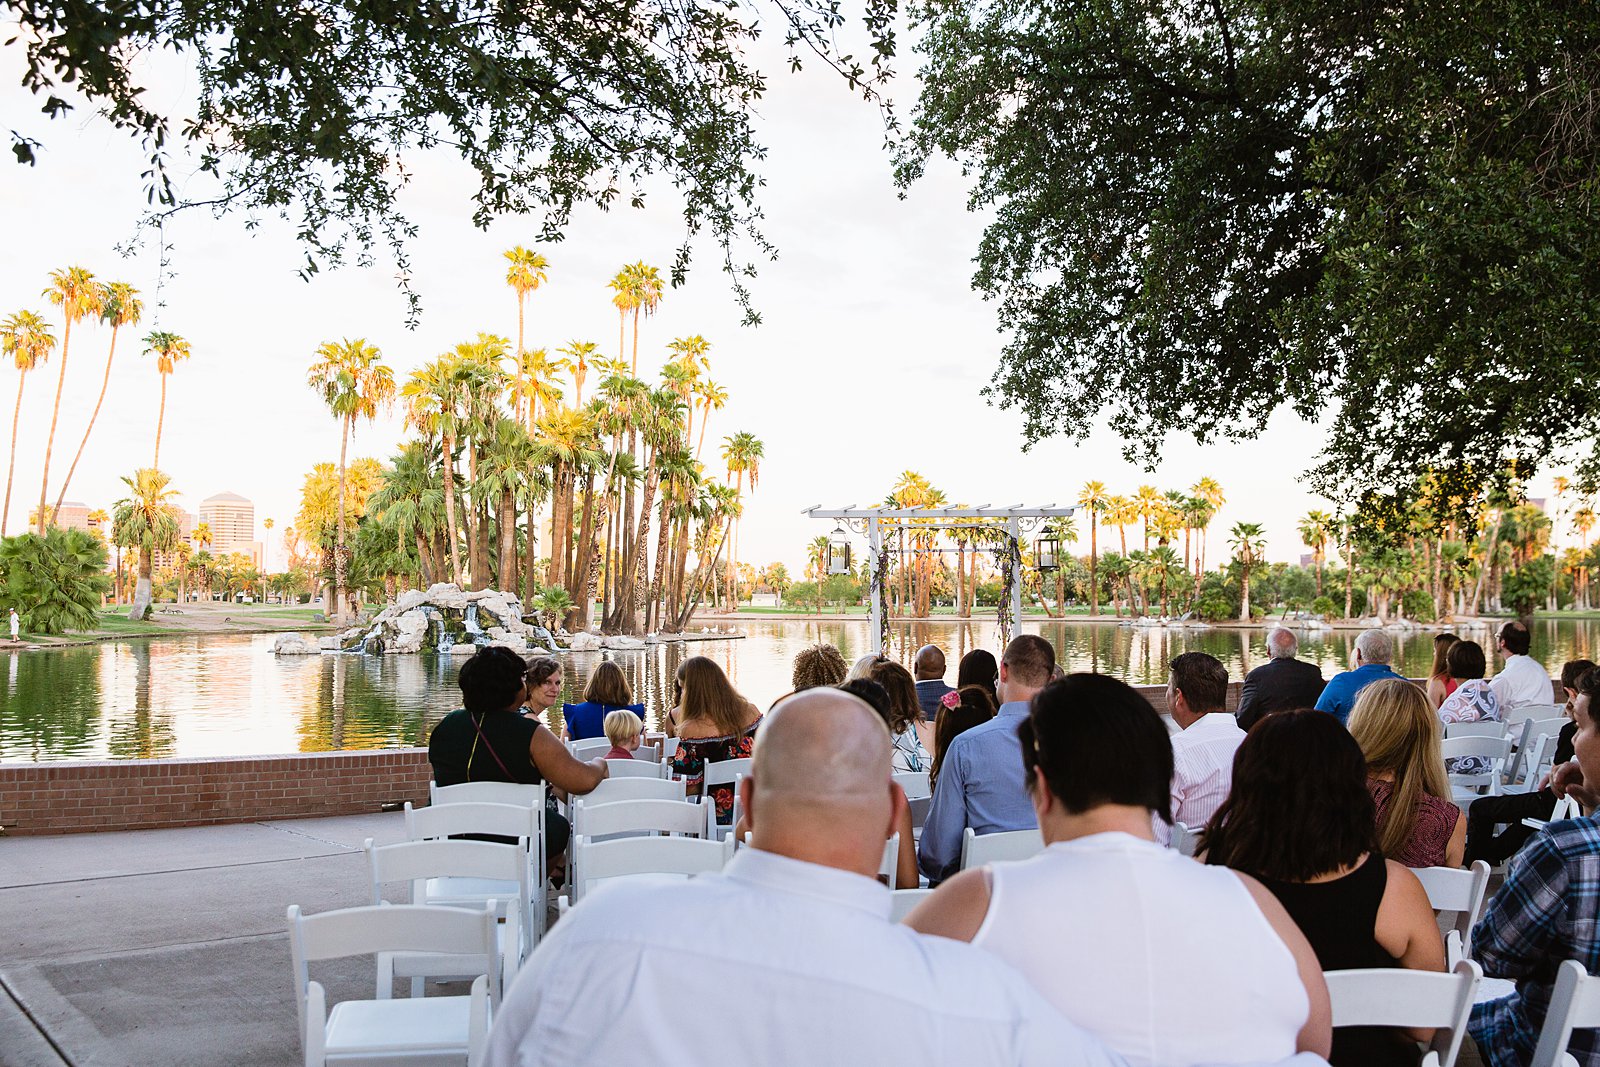 Wedding ceremony at Encanto Park by Arizona wedding photographer PMA Photography.